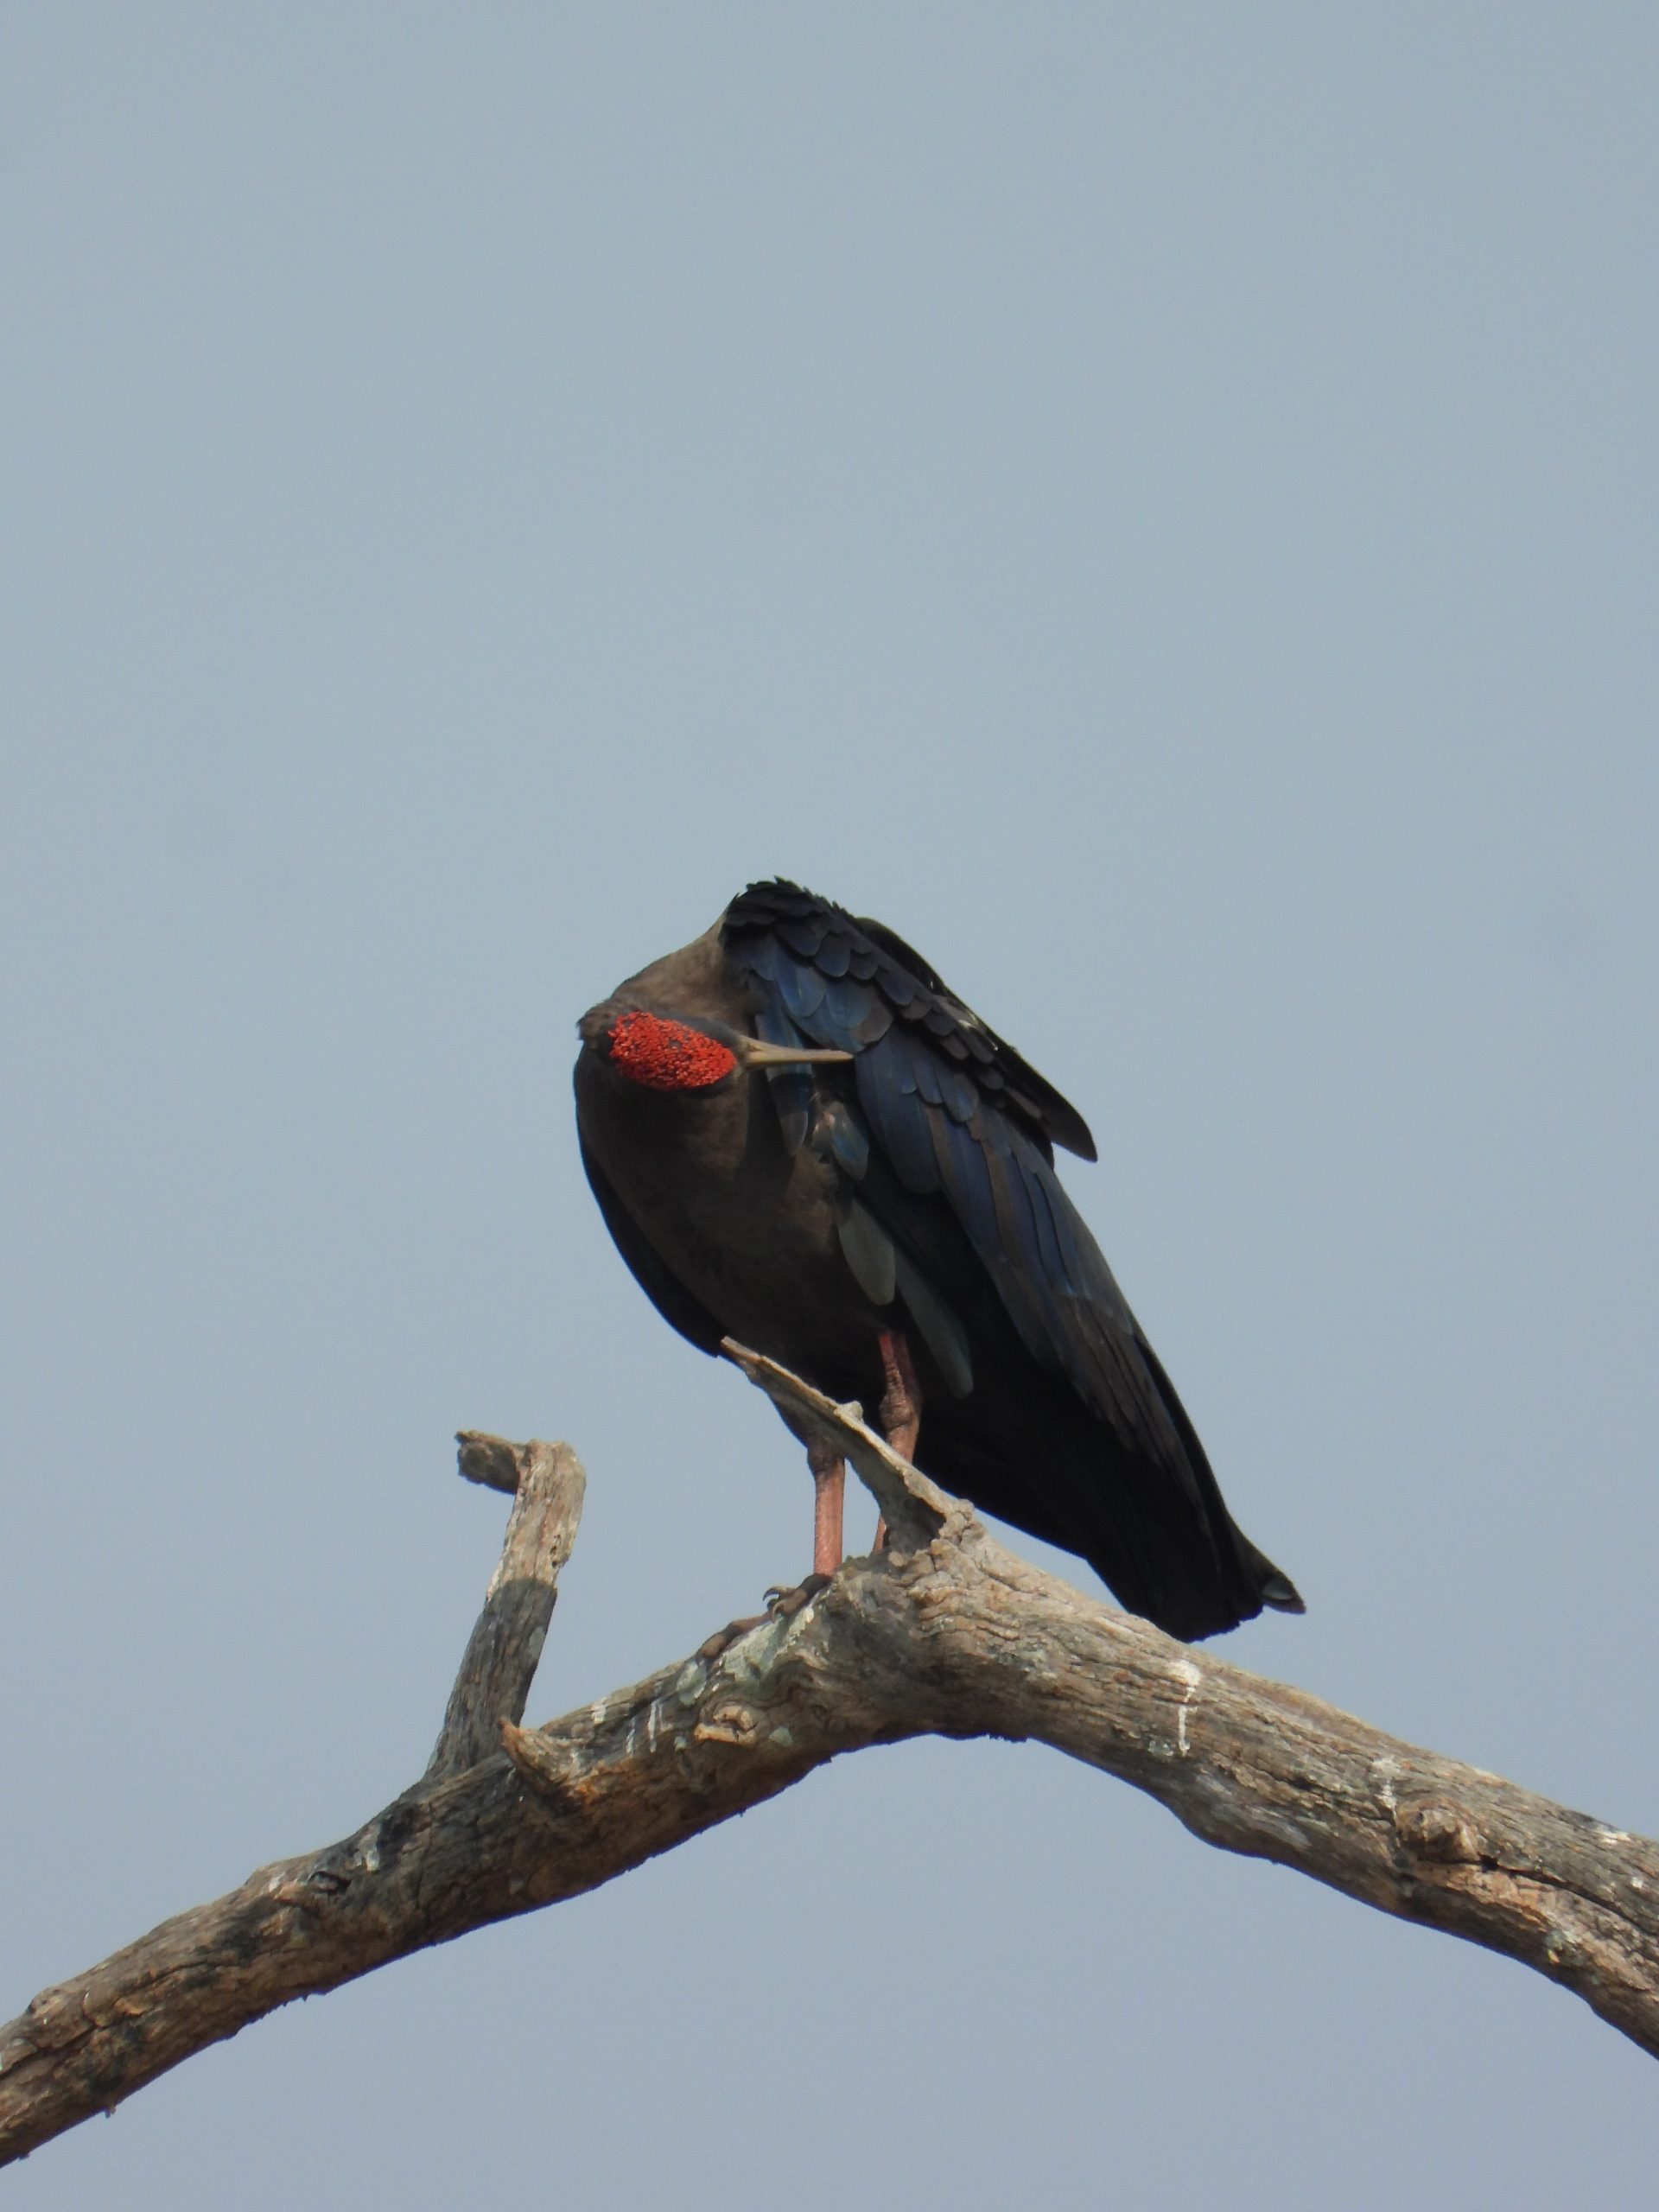 Ibis bird on a tree